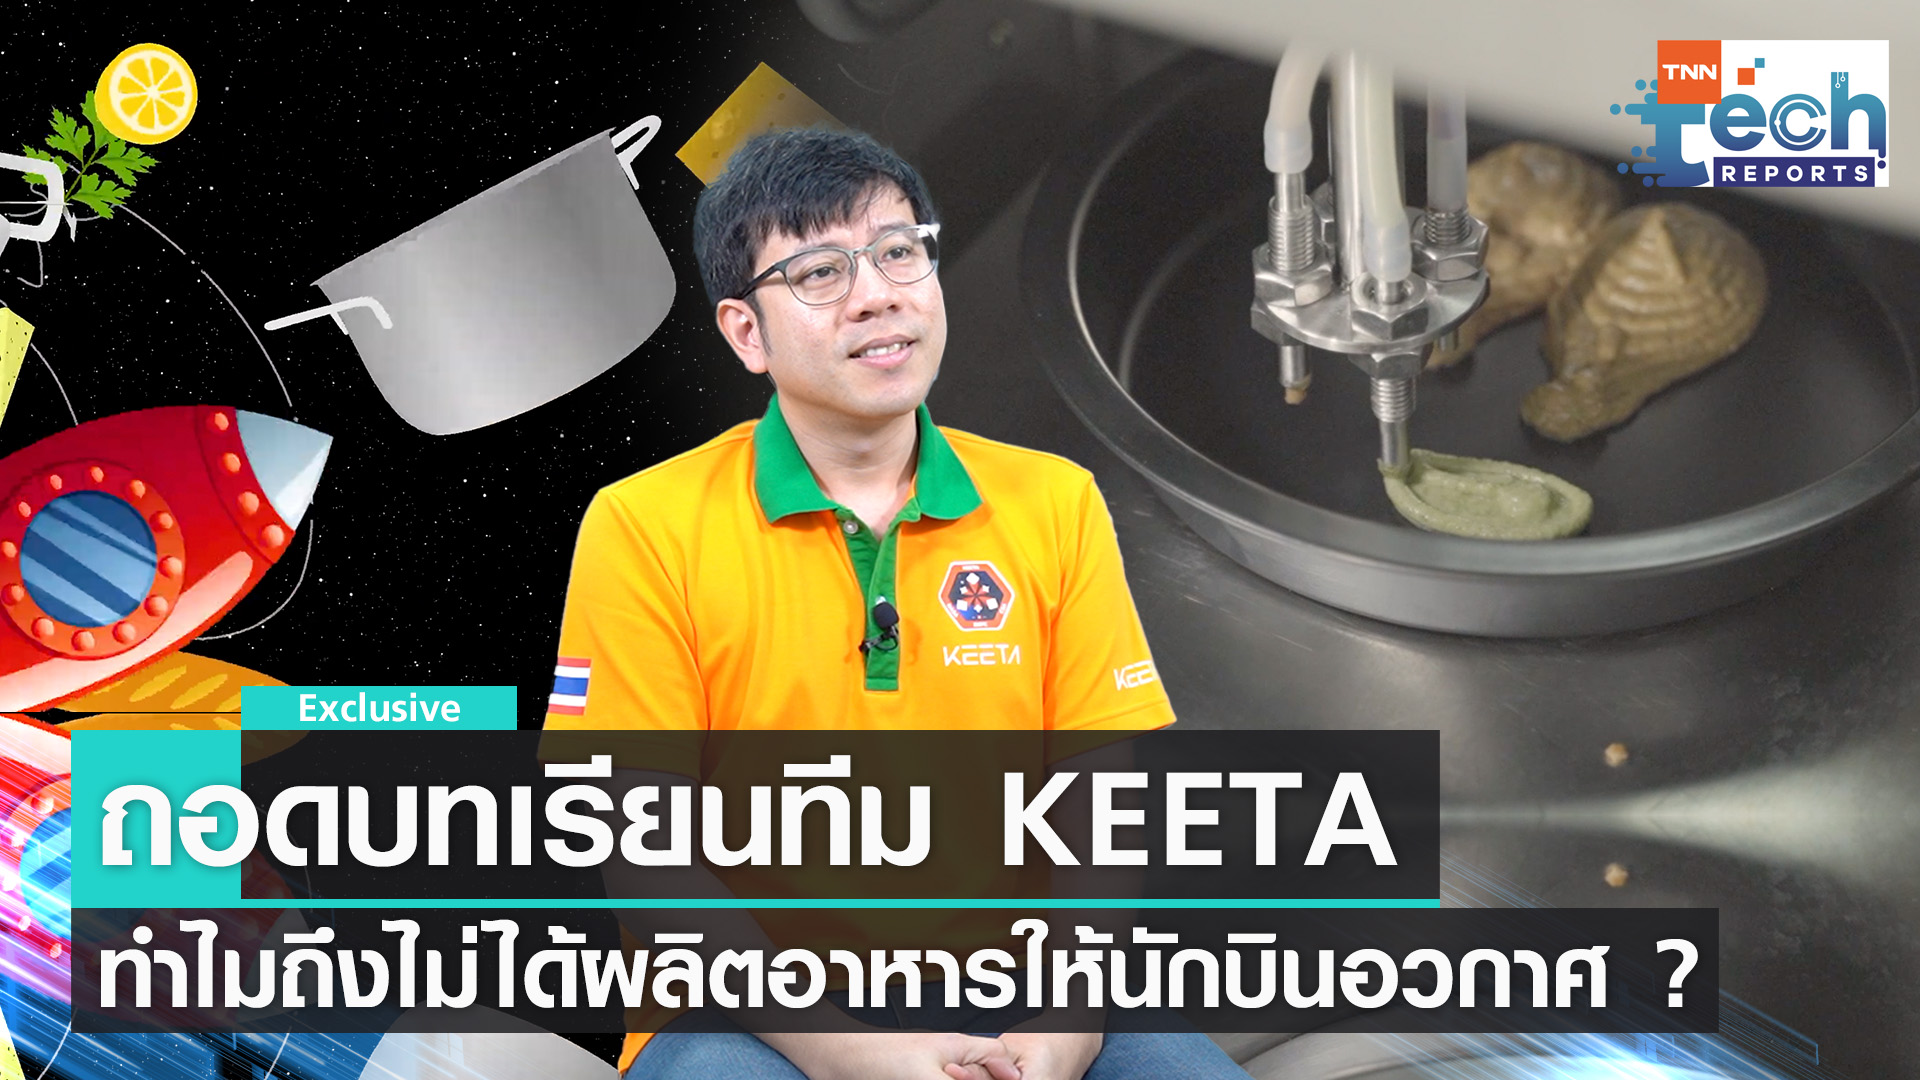 บทสรุป KEETA ไม่ได้ไปอวกาศ แต่ได้ความรู้มอบให้คนไทย | TNN Tech Reports